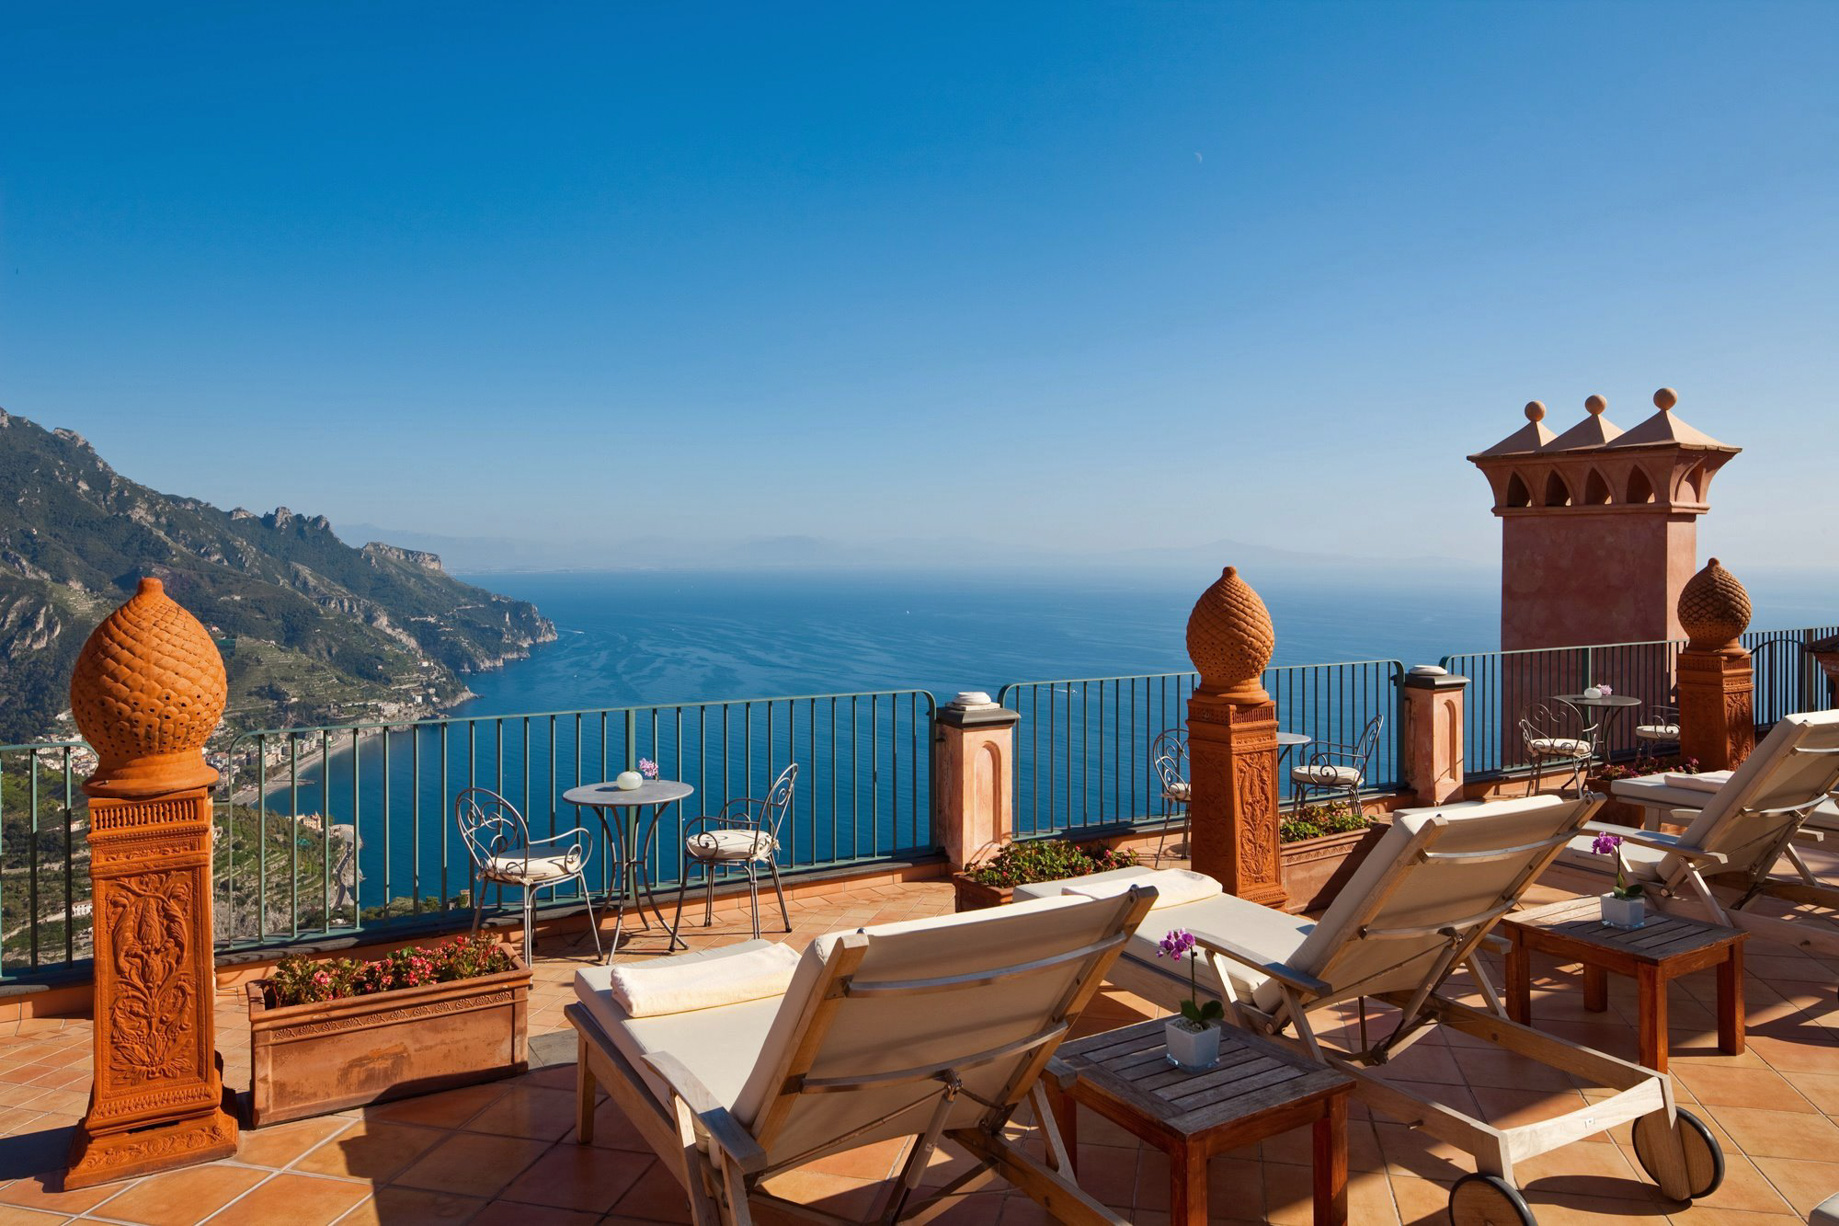 Palazzo Avino Hotel – Amalfi Coast, Ravello, Italy – Terrace Ocean View